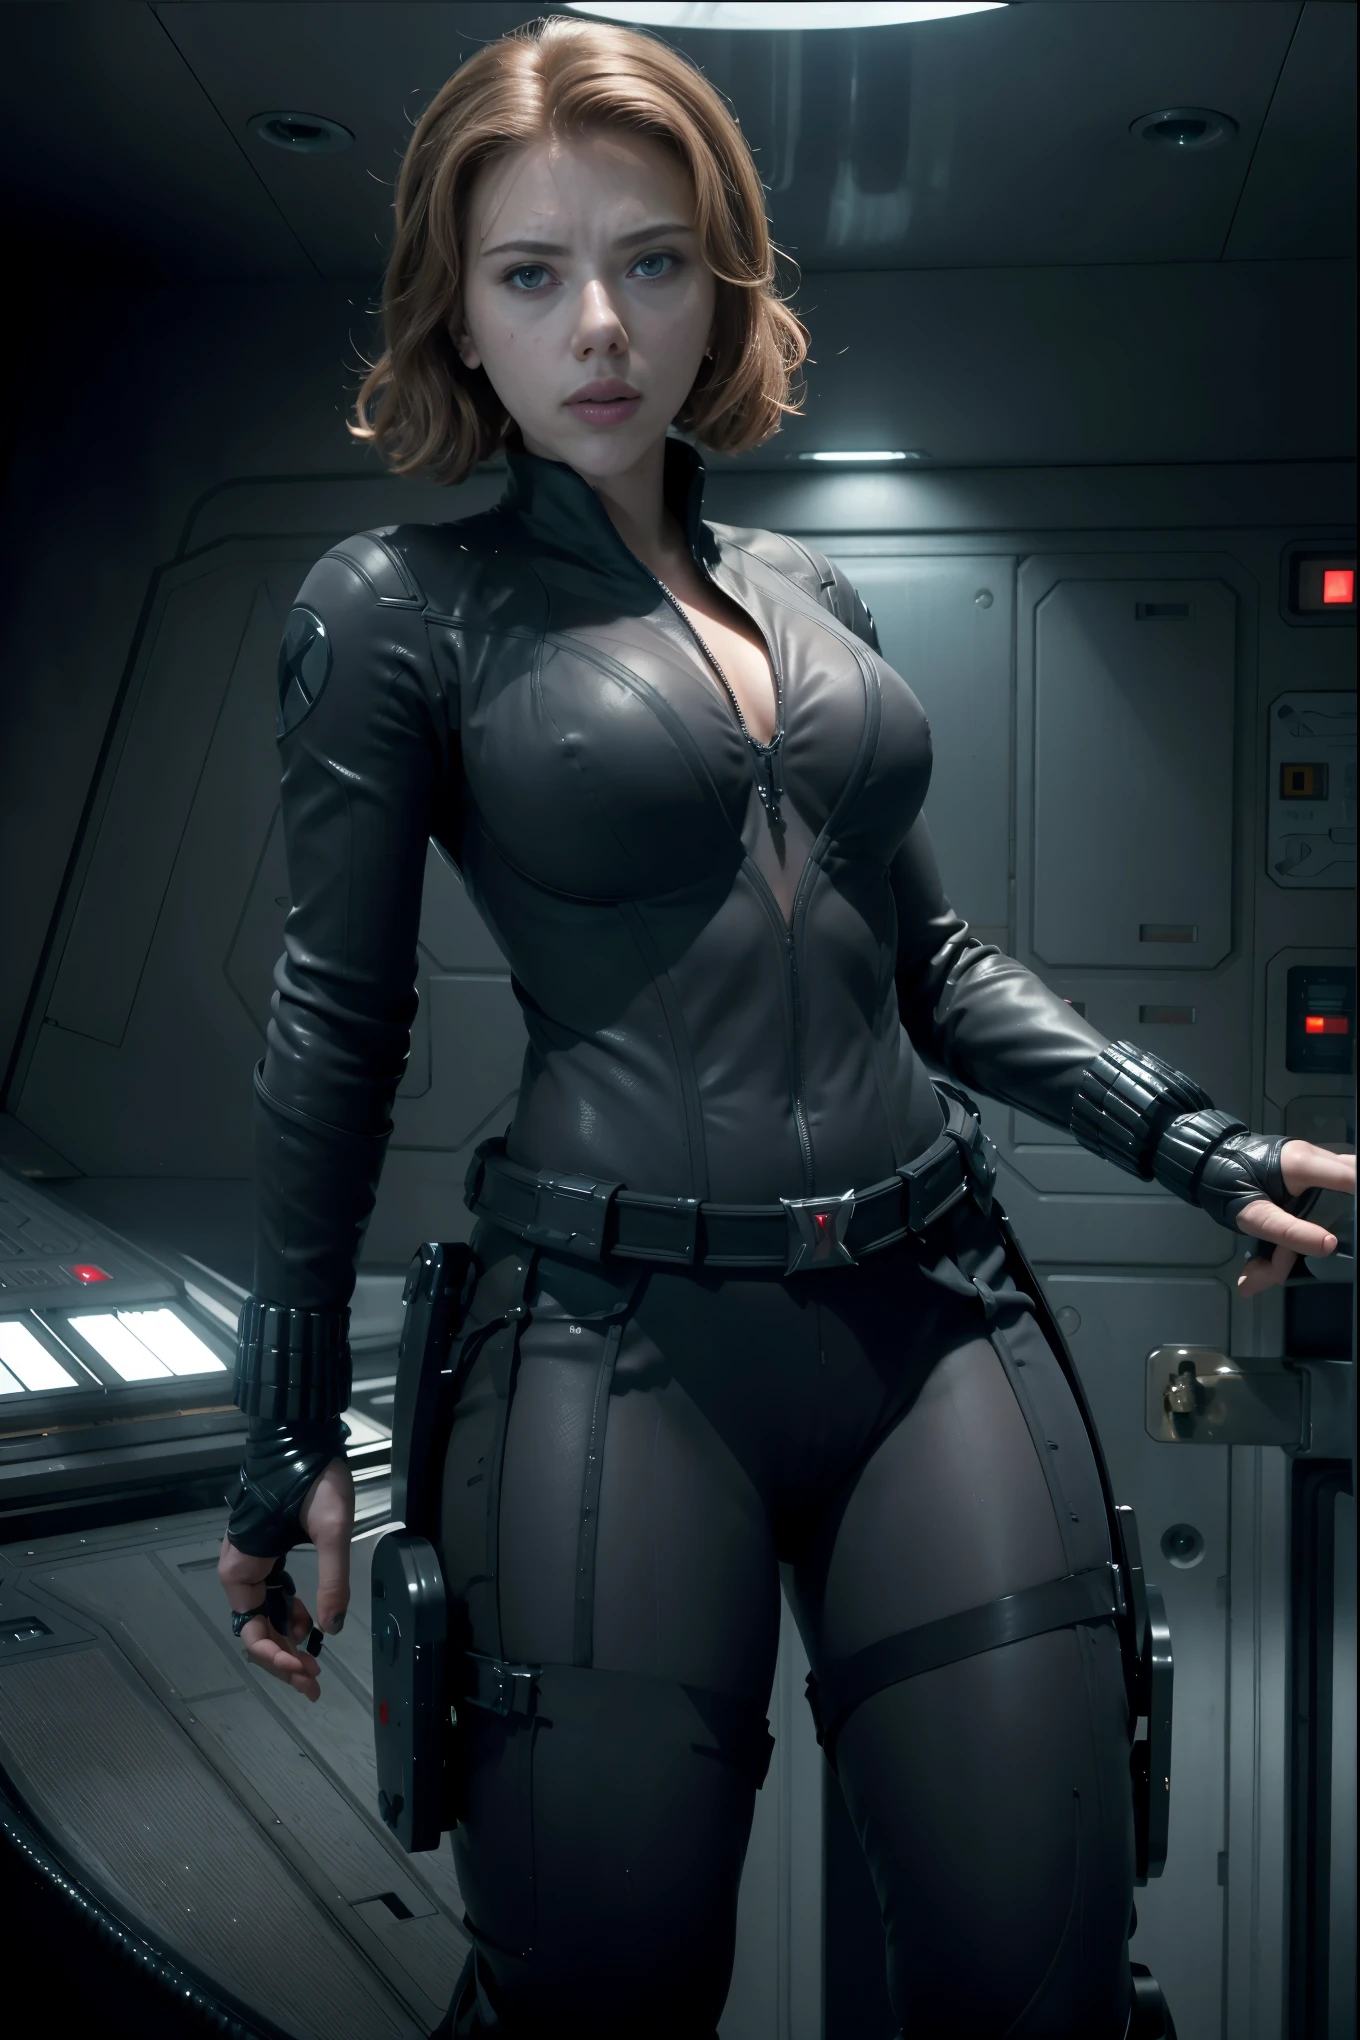 ((mejor calidad)), ((Obra maestra)), ((Scarlett Johansson)) (detallado), cara perfecta, mujer juguetona de 20 años, Sensual pose. Dentro de una nave espacial, wearing highly detallado futuristic skimpy halo armor, desnudo.